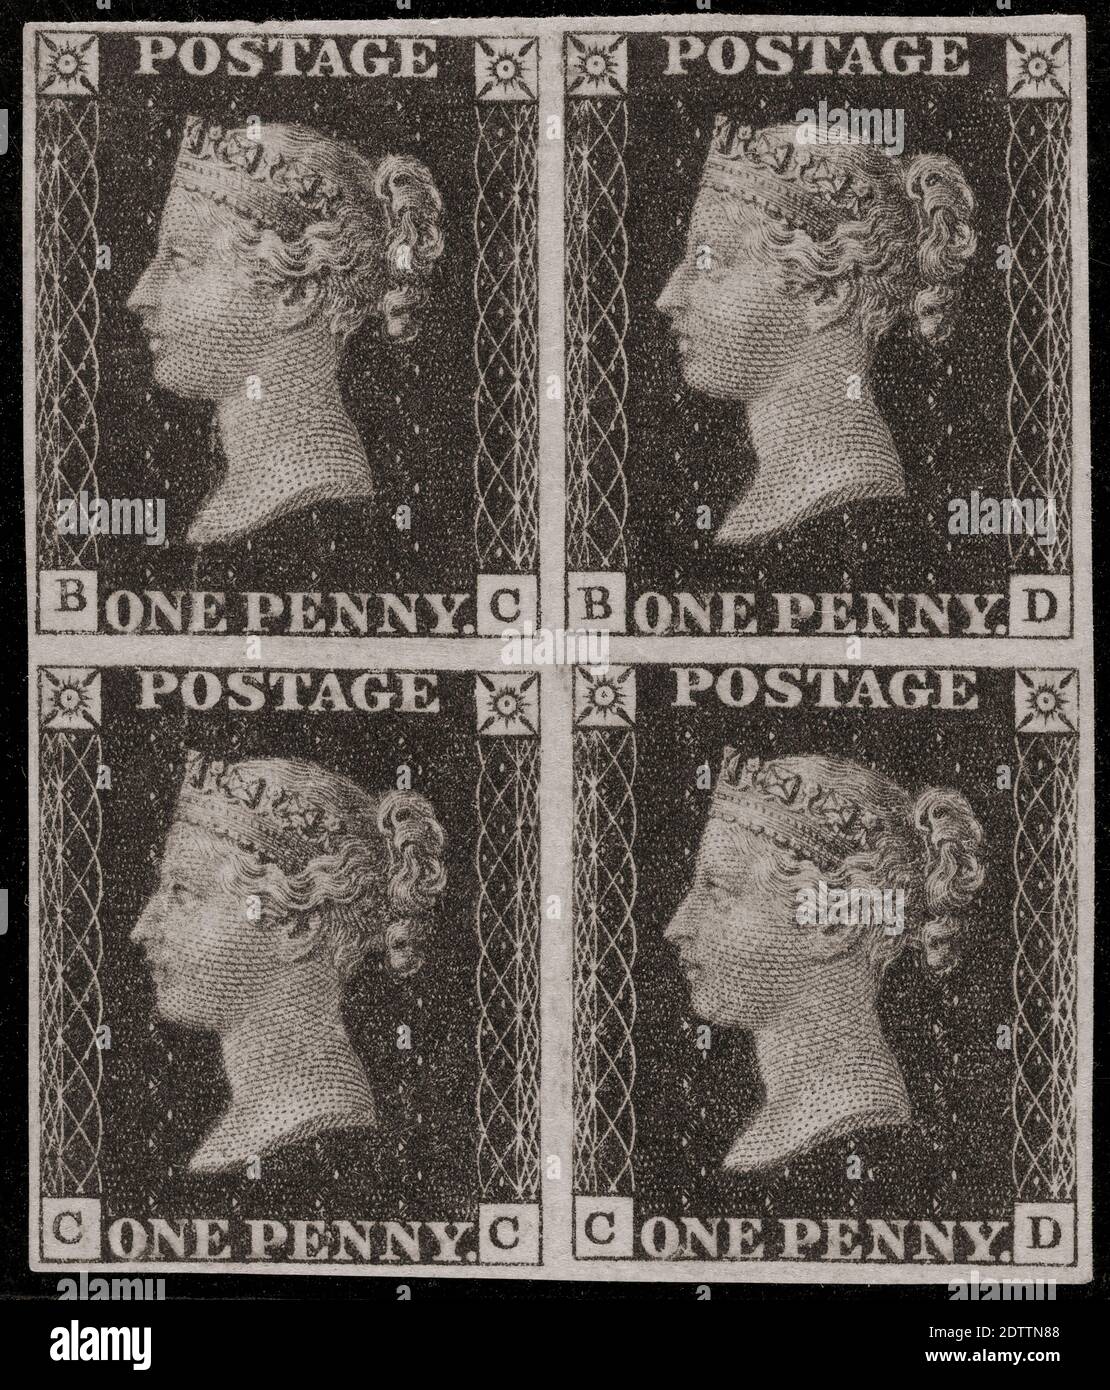 Un blocco di quattro francobolli Penny Black. Il Penny Black è stato il primo francobollo adesivo al mondo. Il francobollo, con un ritratto della regina Vittoria, fu emesso il 1° maggio 1840. Foto Stock